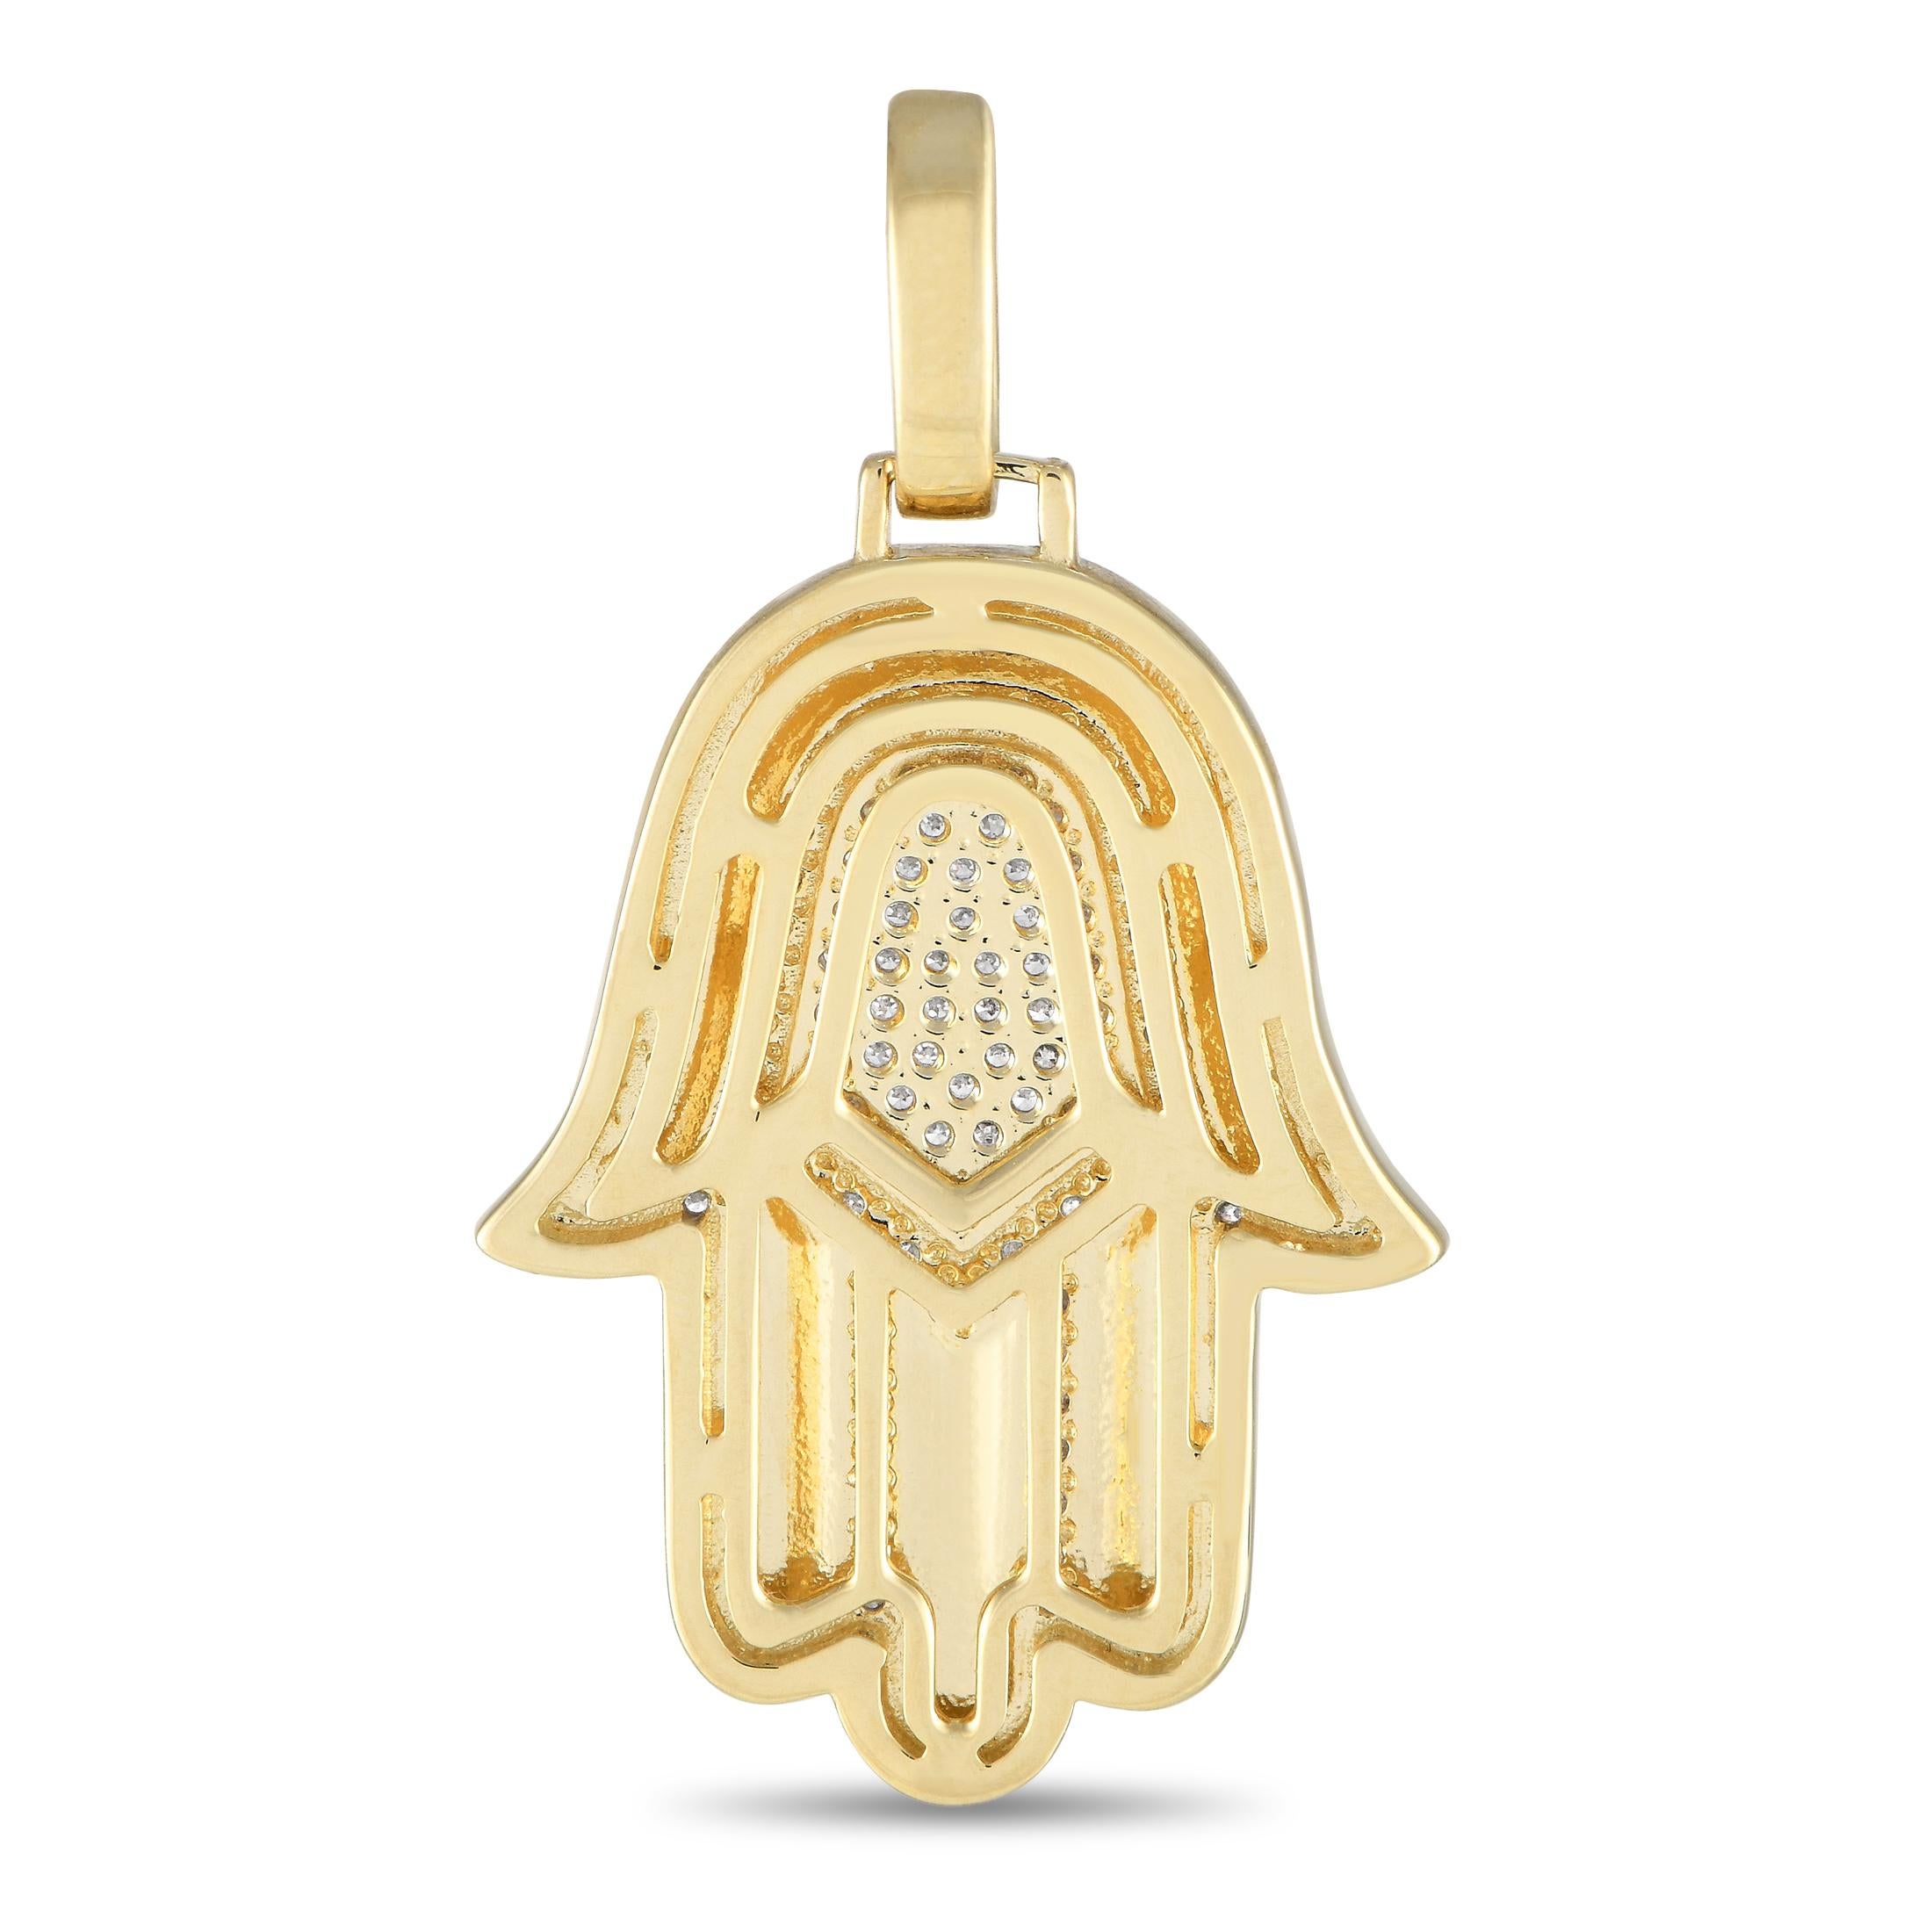 Le Hamsa est un ancien symbole spirituel destiné à éloigner les forces maléfiques invisibles. Ce luxueux pendentif Hamsa est réalisé en opulent or jaune 14 carats et brille grâce à des diamants d'un poids total de 0,50 carats. Il mesure 1,45 de long